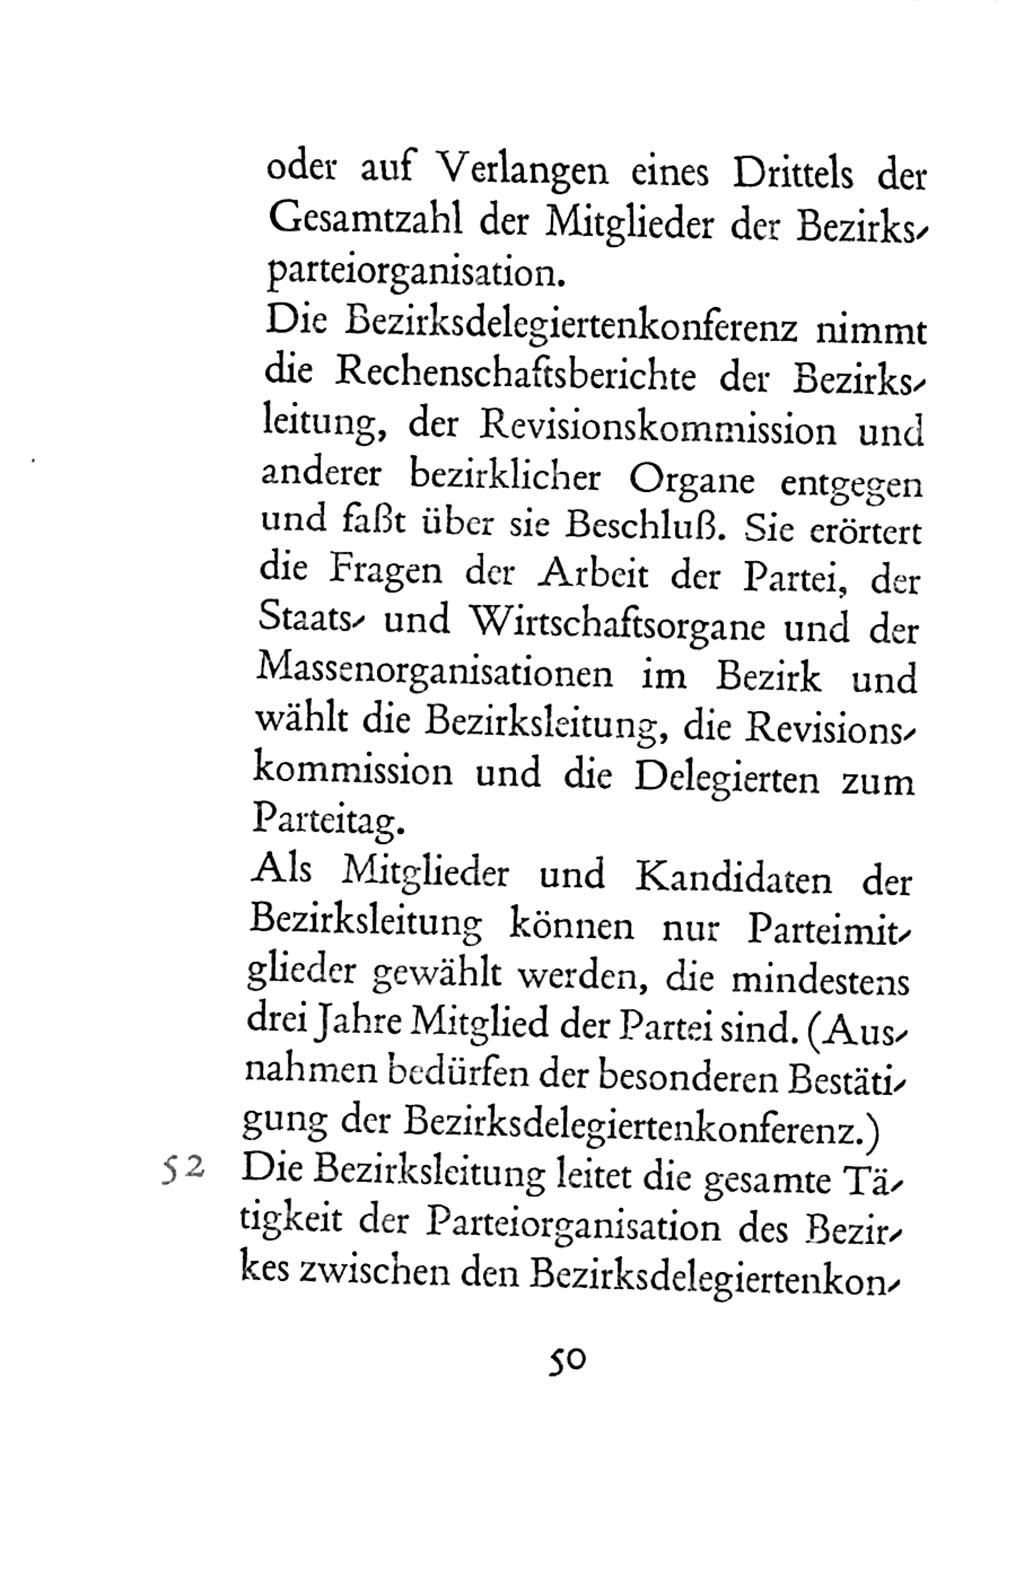 Statut der Sozialistischen Einheitspartei Deutschlands (SED) 1954, Seite 50